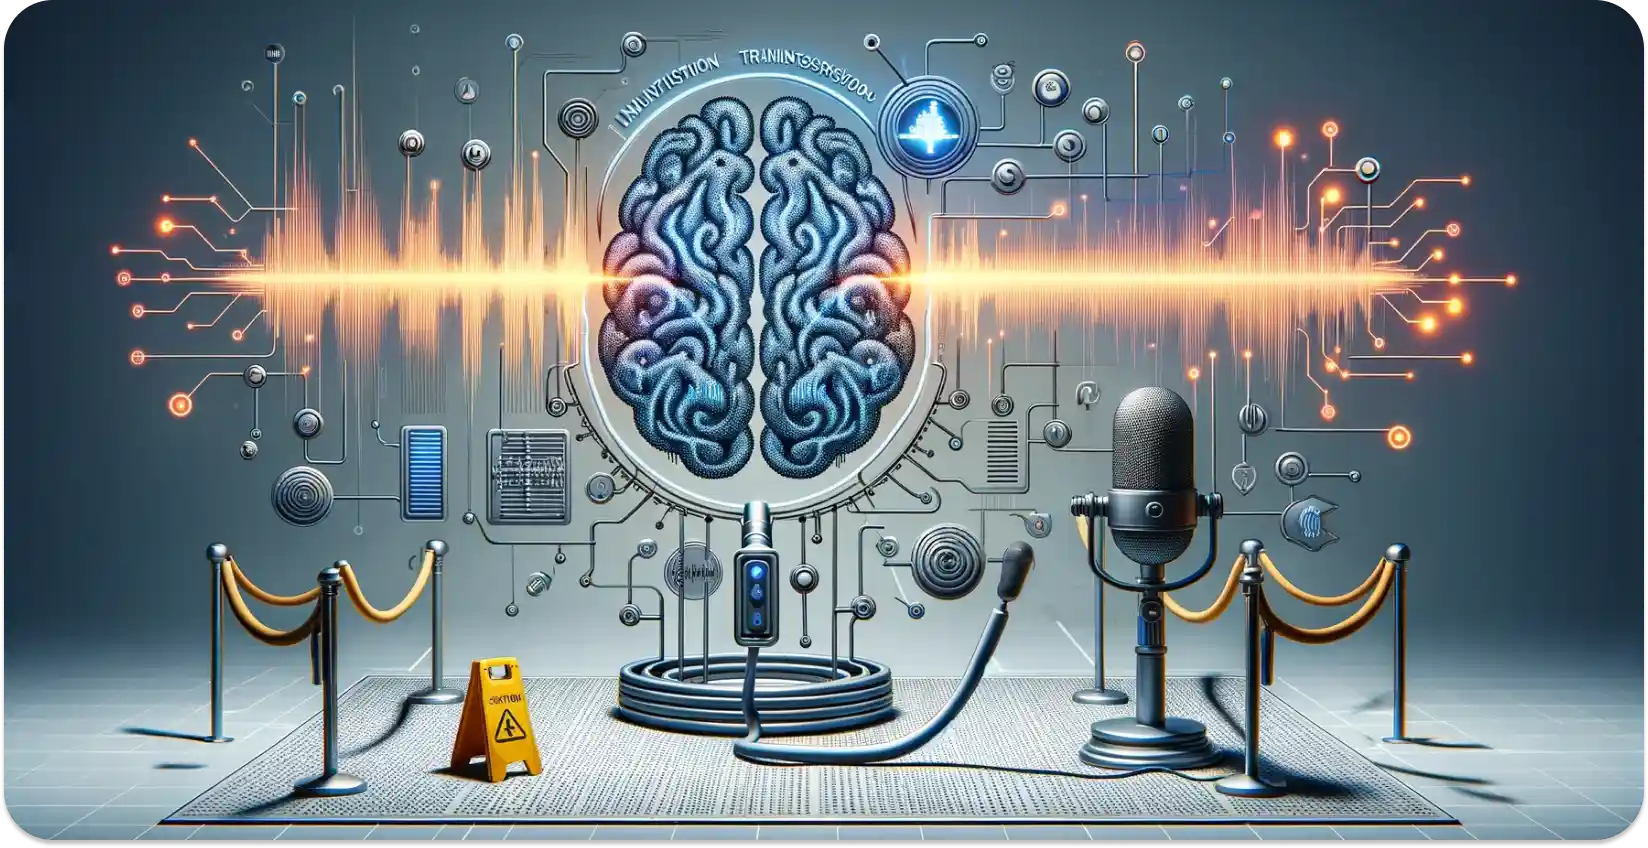 एक AI मस्तिष्क की वैचारिक कला ध्वनि तरंगों को डेटा में संसाधित करती है, जो ऑडियो ट्रांसक्रिप्शन का प्रतीक है।